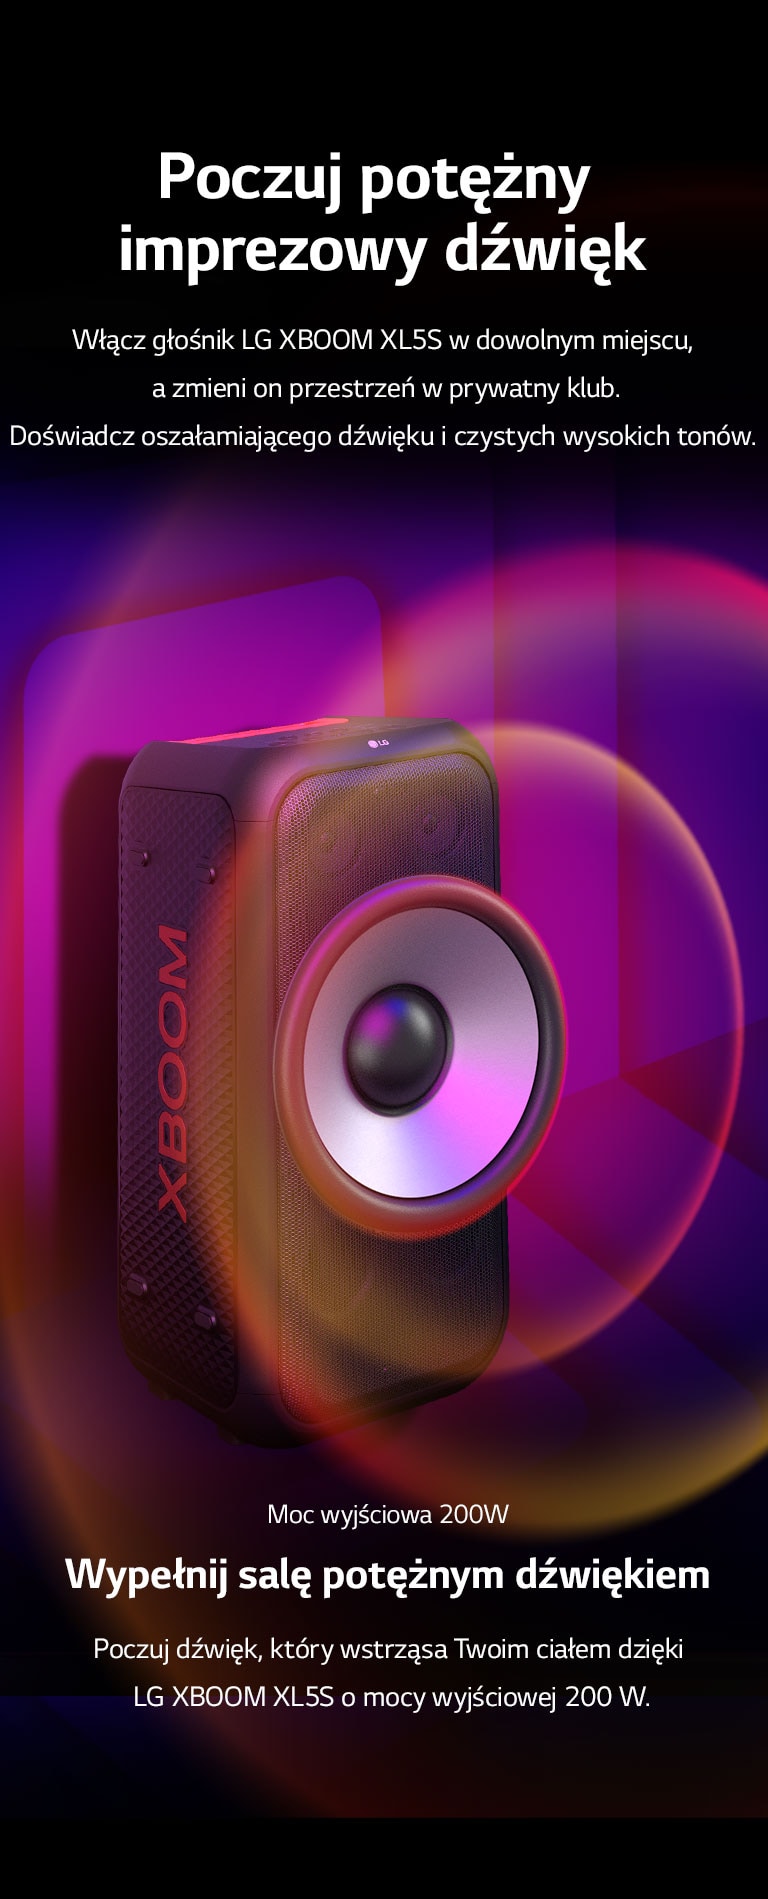 LG XBOOM XL5S jest umieszczony w nieograniczonej przestrzeni. Na ścianie zilustrowano kwadratowe grafiki dźwiękowe. Powiększony 6,5-calowy głośnik niskotonowy umieszczono w środku głośnika w celu podkreślenia jego potężnego dźwięku 200 W. Z głośnika niskotonowego wydobywają się fale dźwiękowe. 